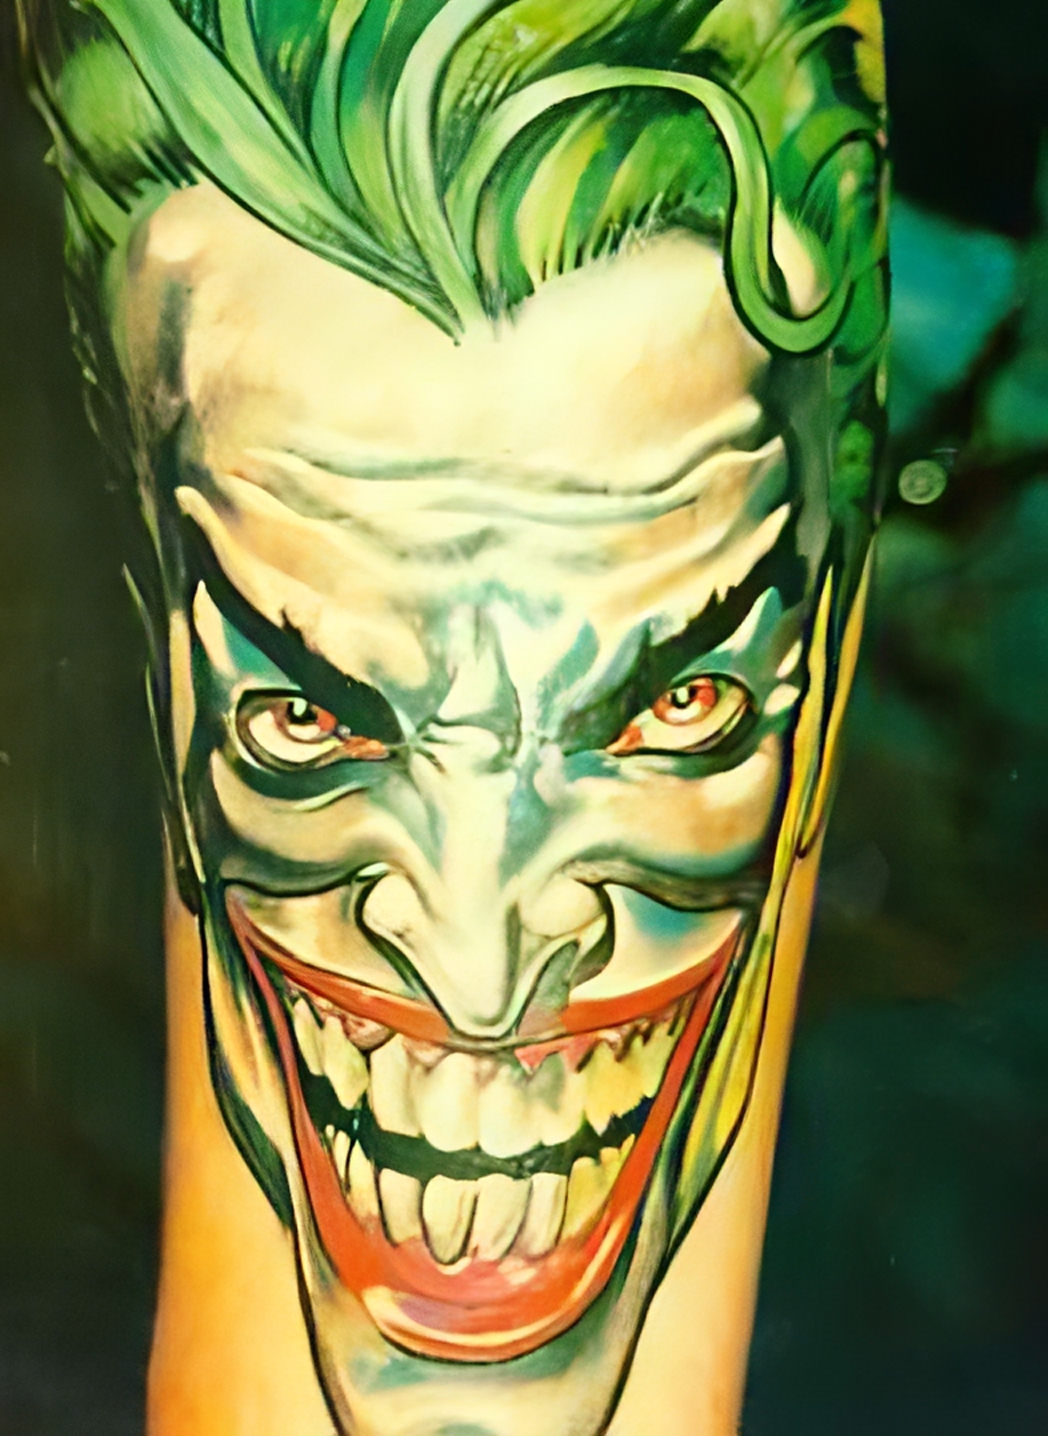 Joker aus Batman mit bösem Grinsen